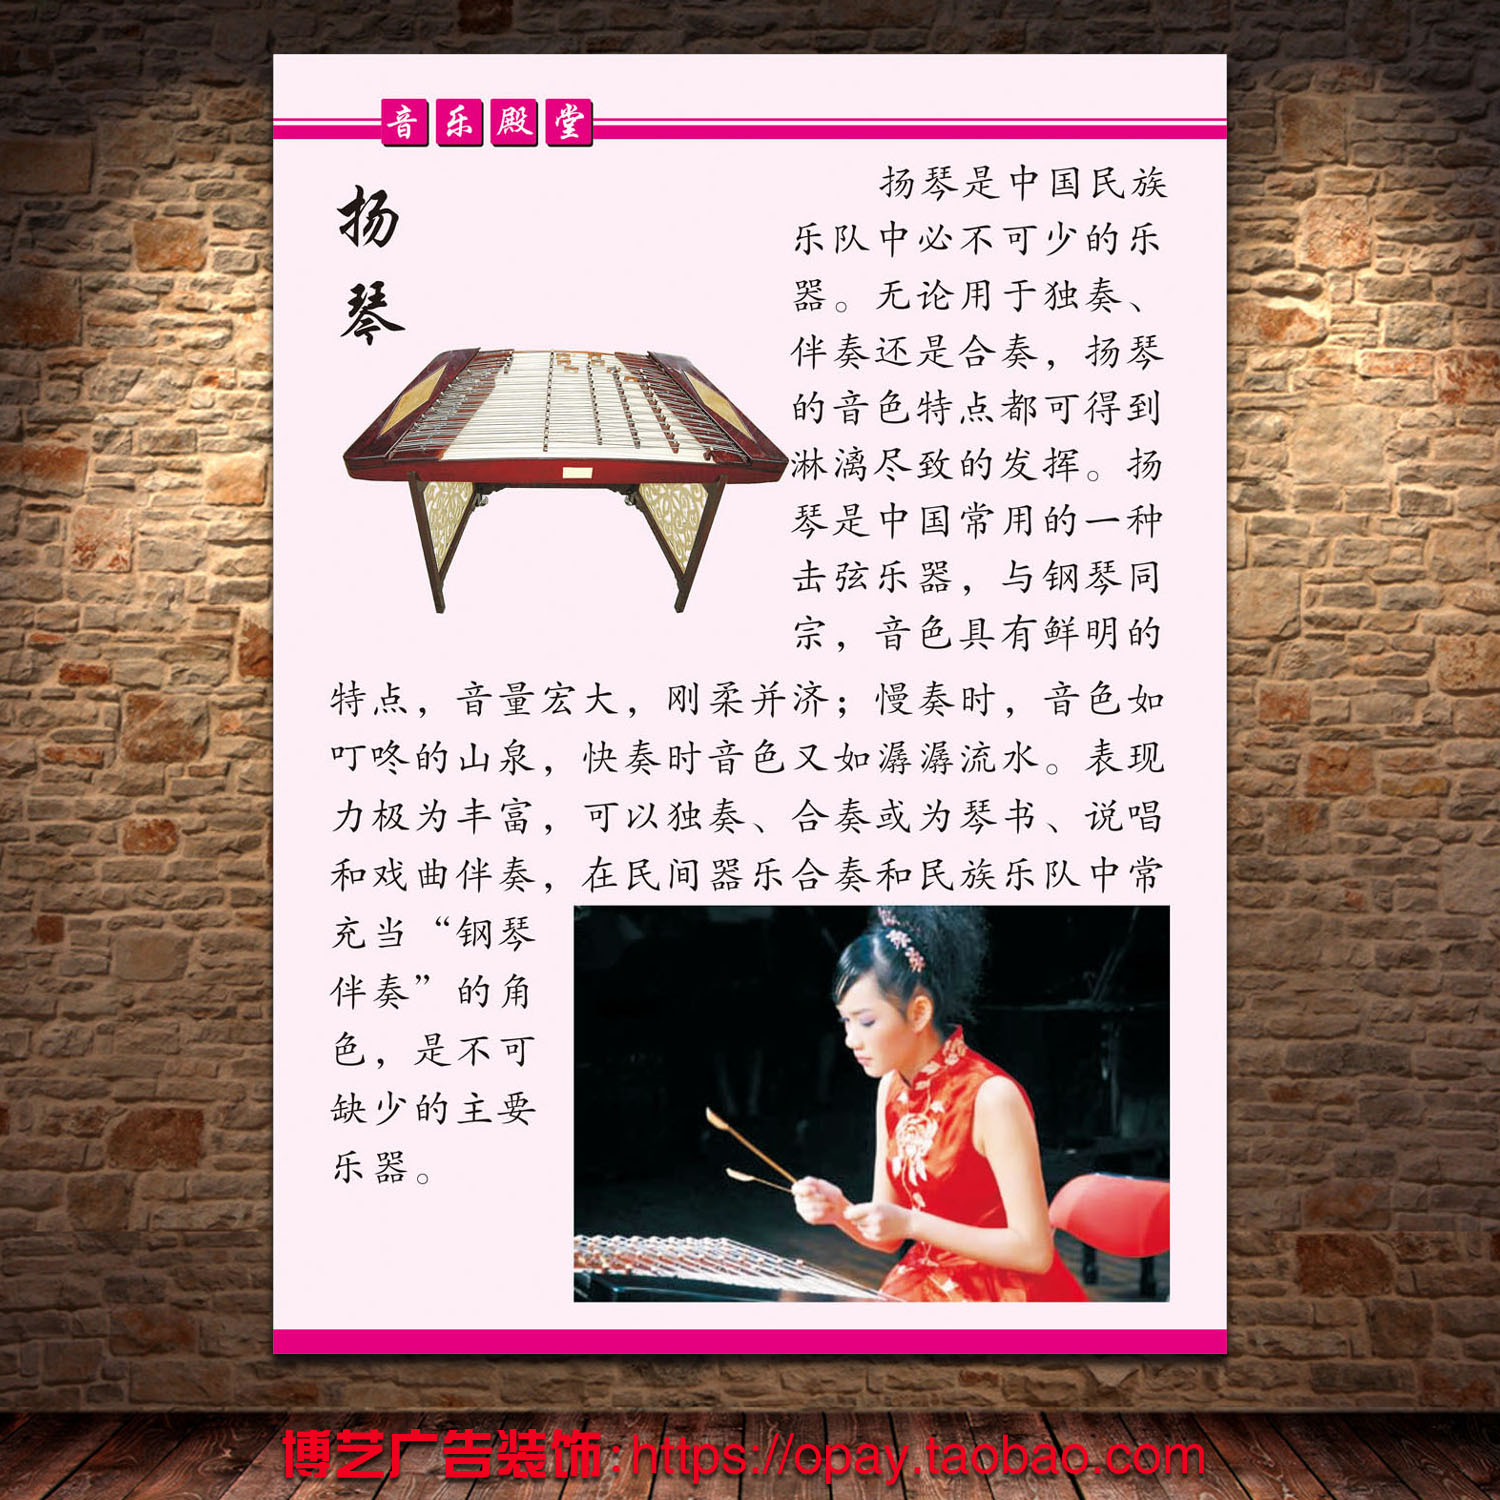 中国民族乐器扬琴简介宣传高清海报印刷展示装饰kt板pp胶挂画墙贴